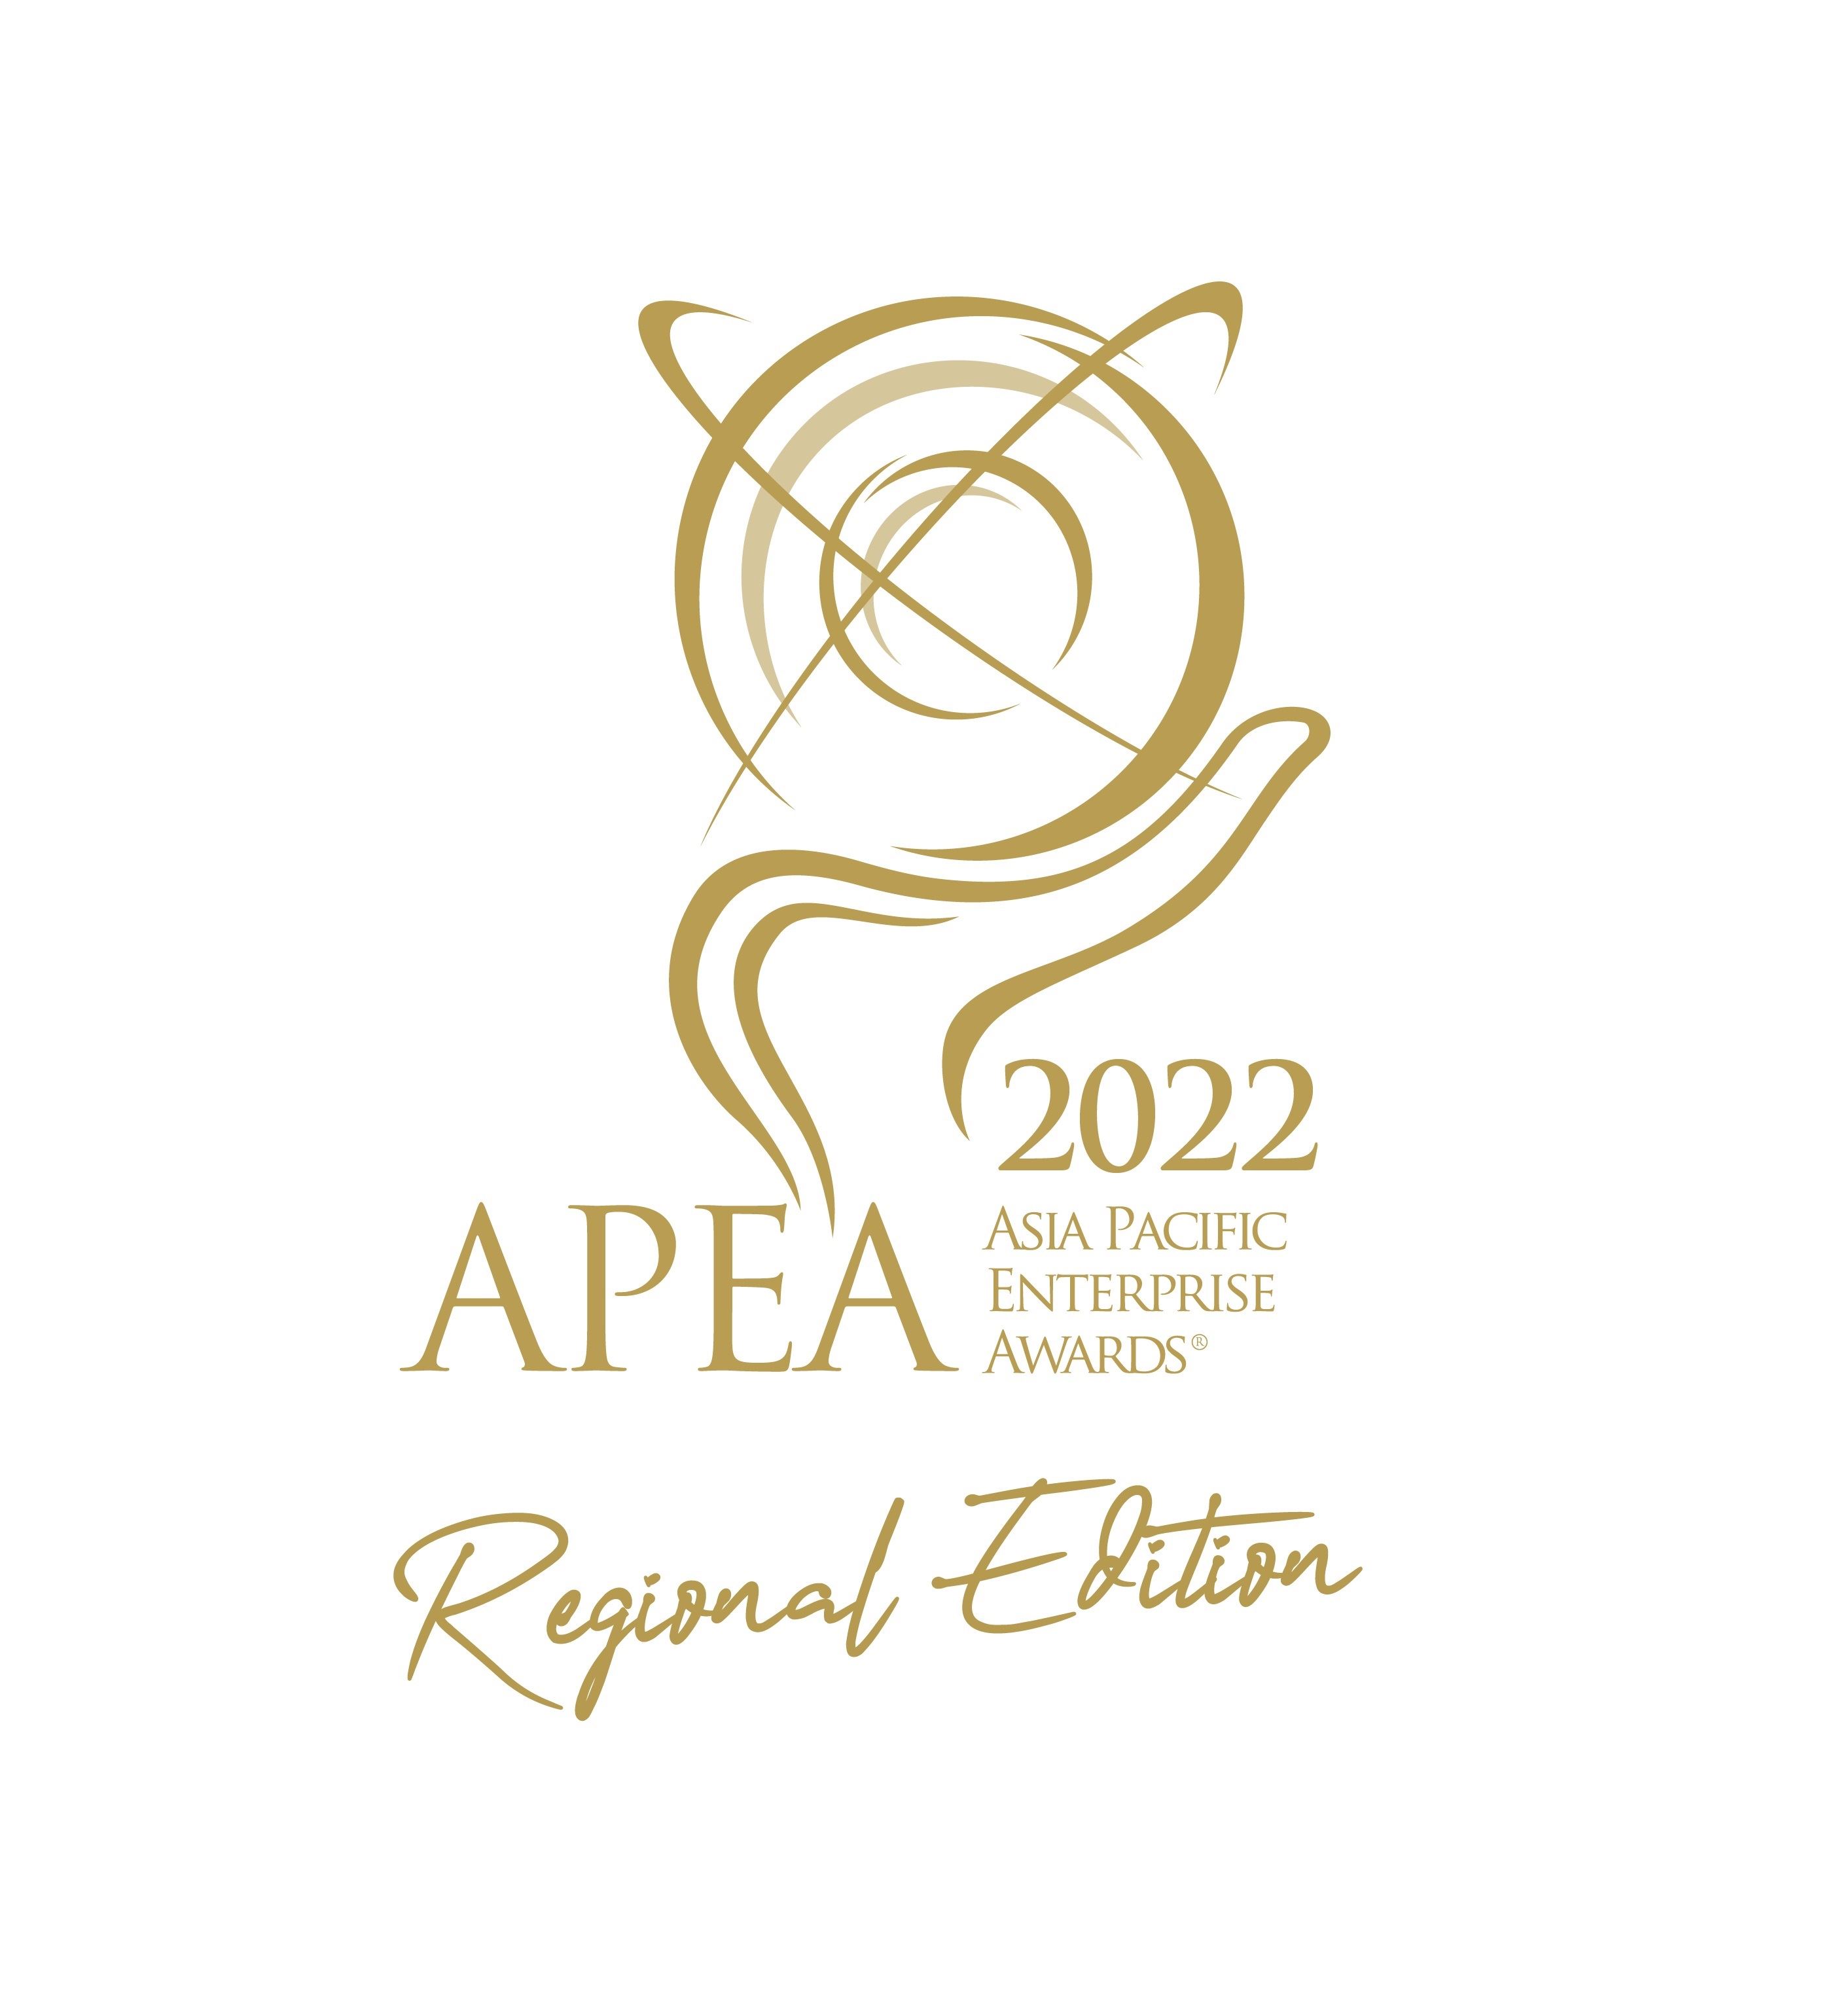 Asia Pacific Enterprise Awards 2022